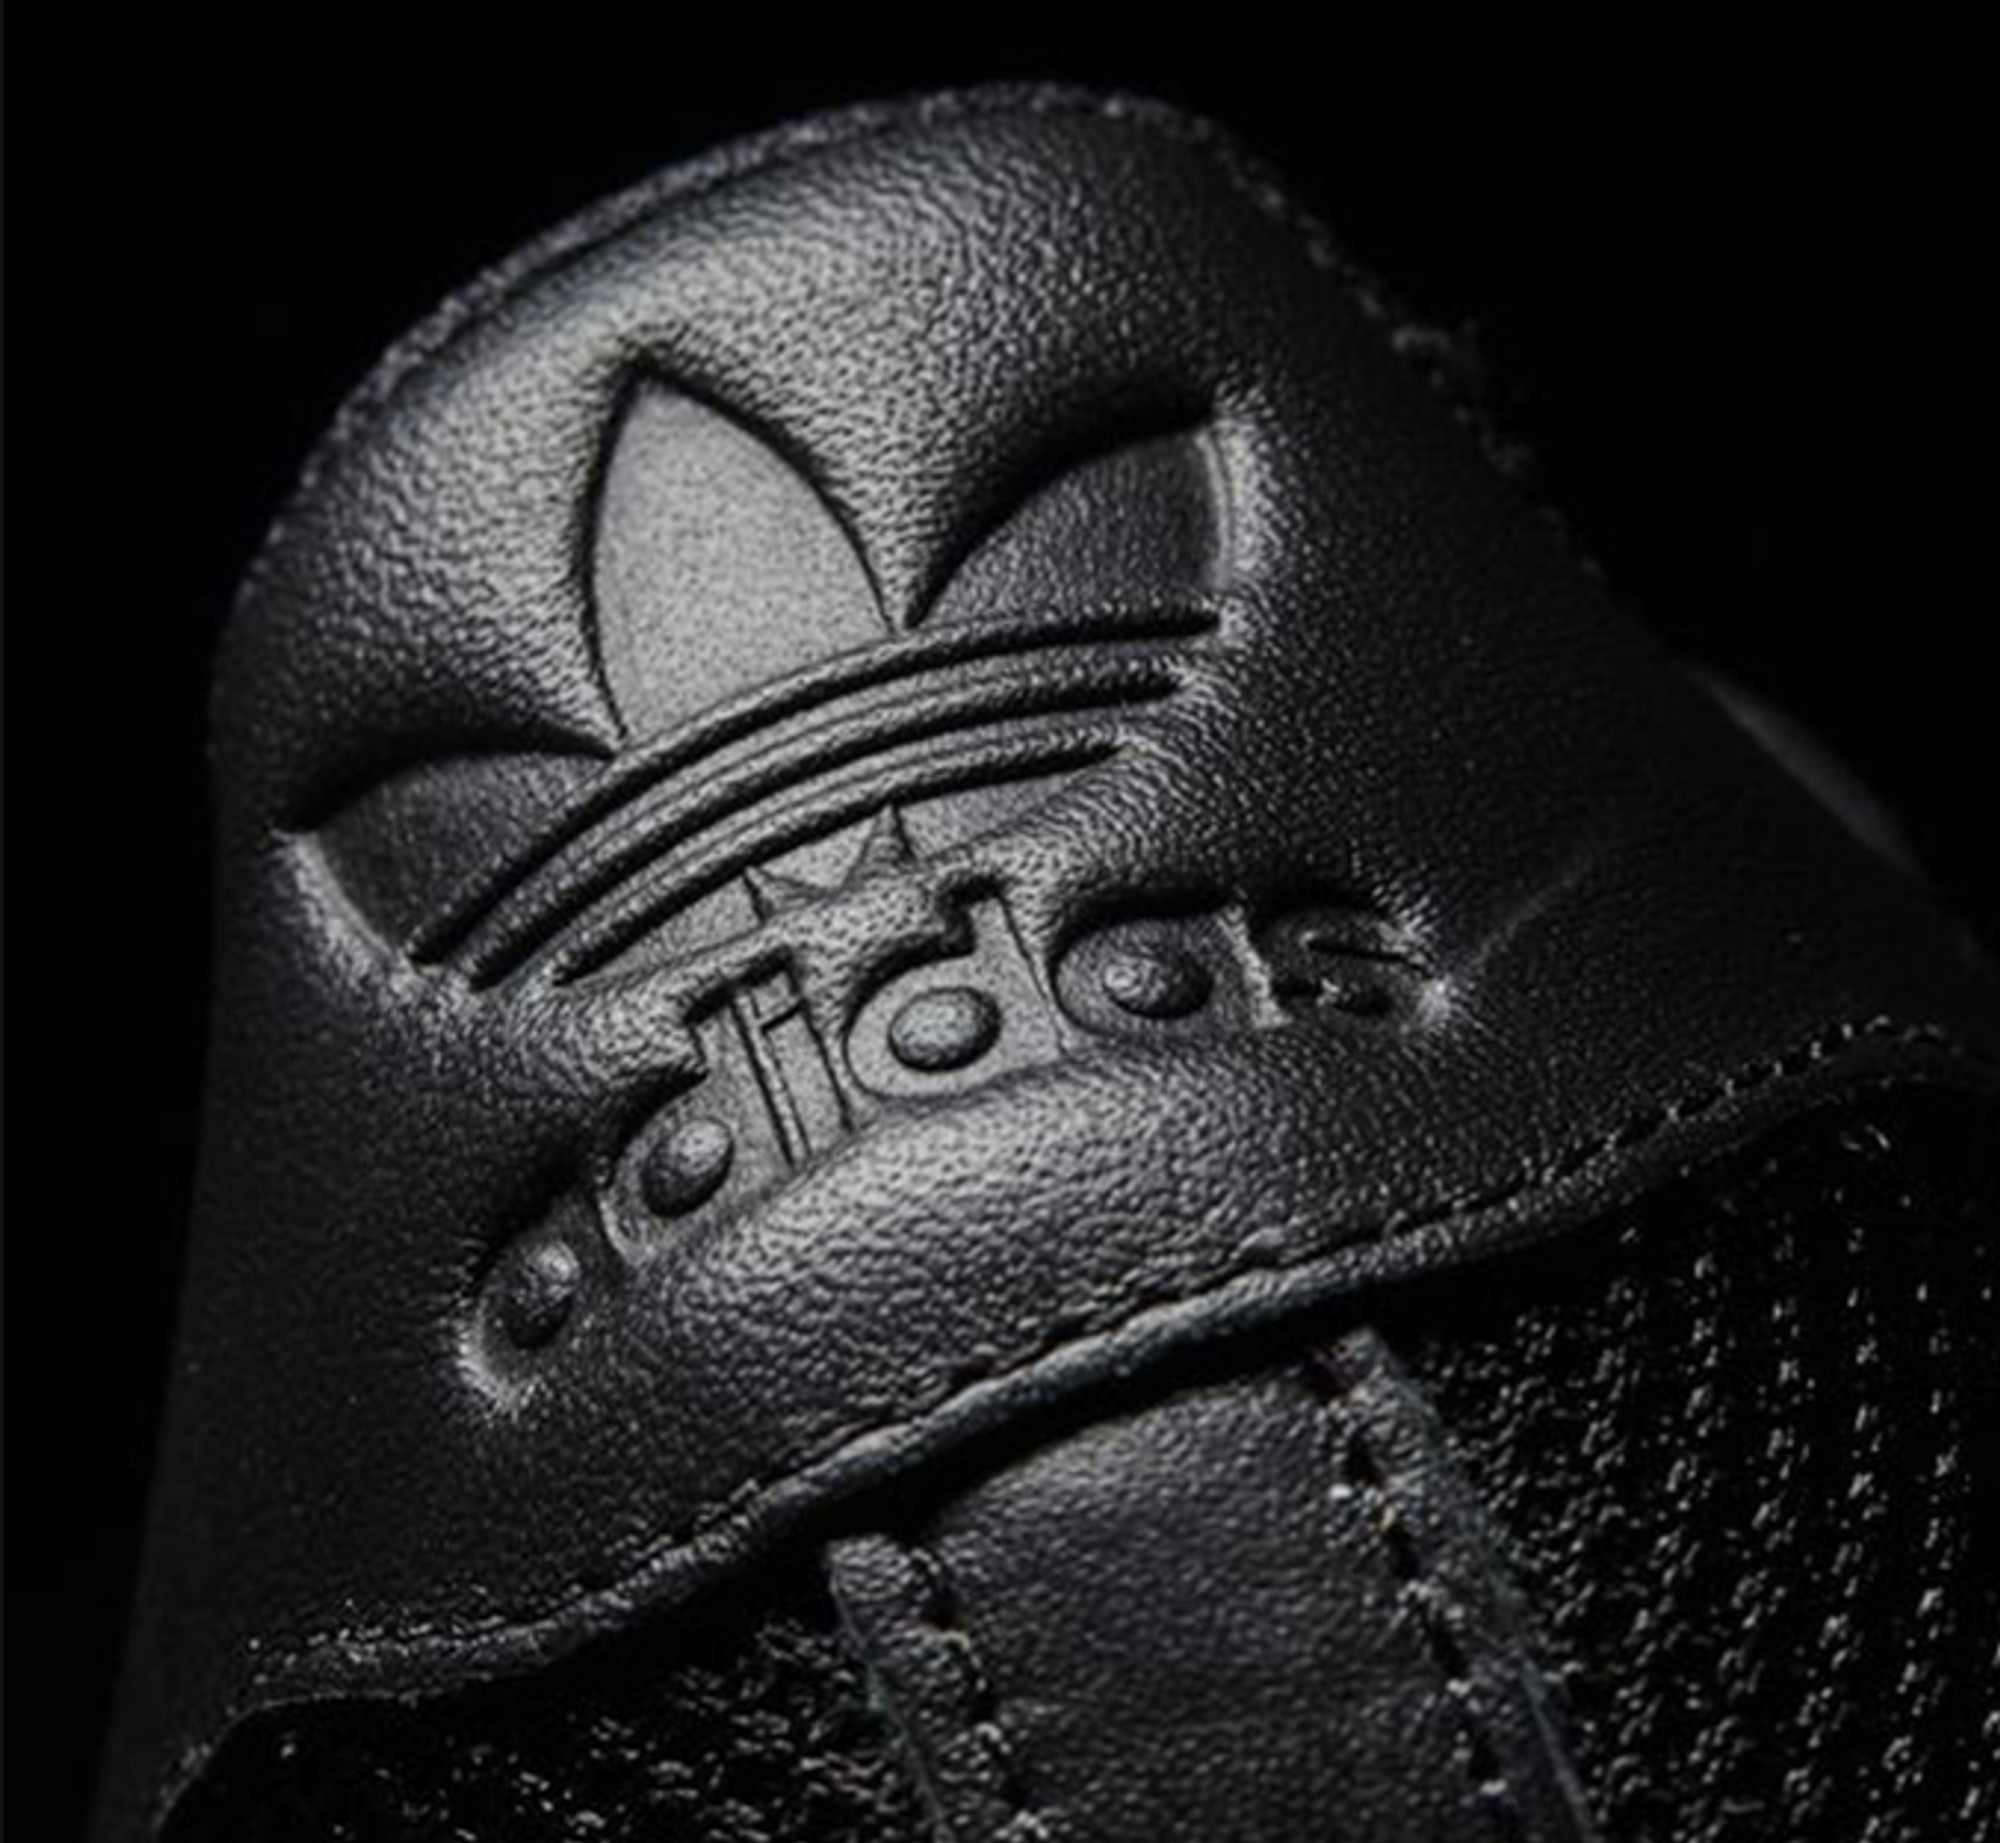 adidas Originals, Shoes, Adidas Original Superstar Shell Toe Sneakers  Womens Size